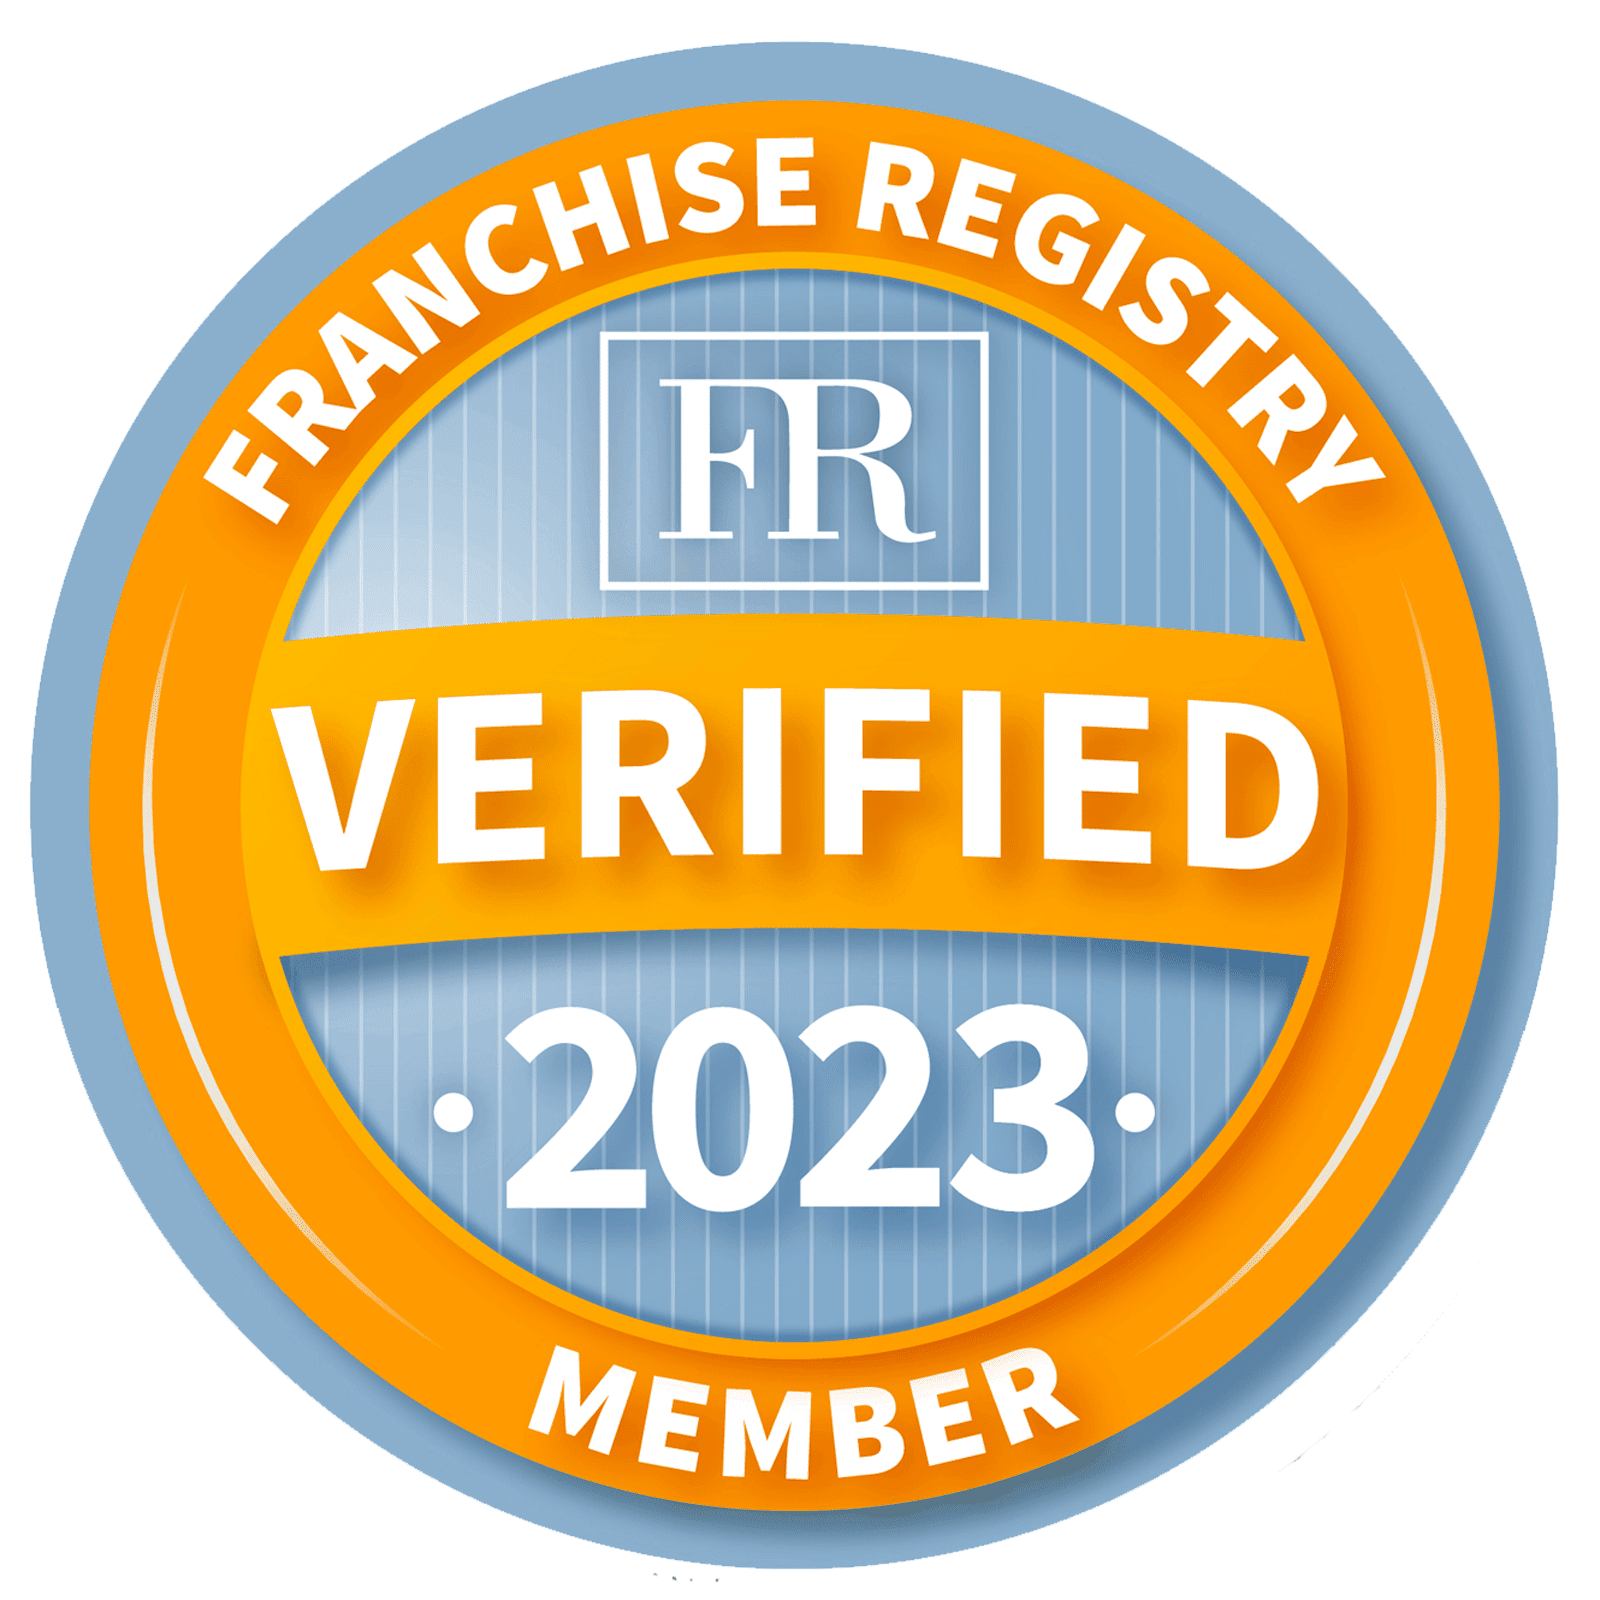 Franchise Registry certifikat